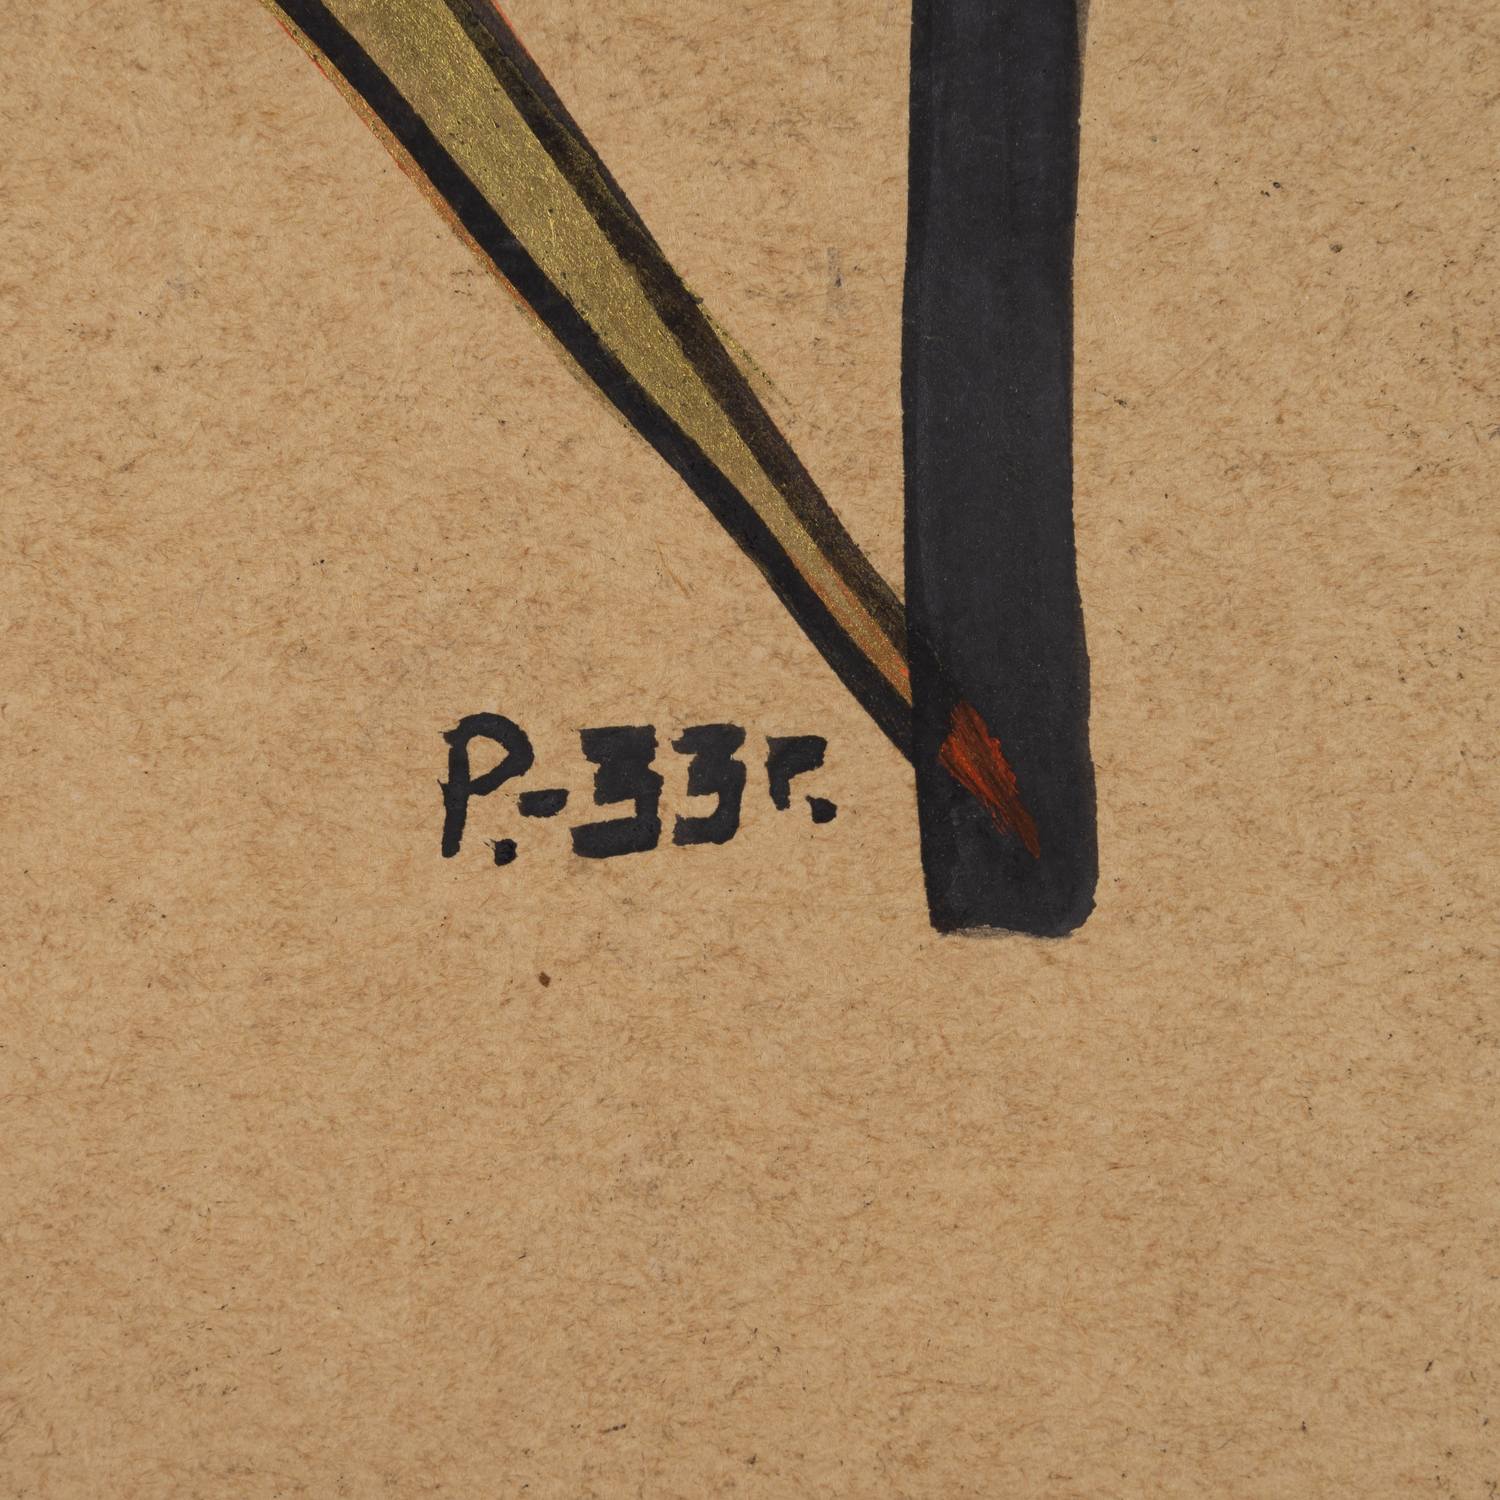 Неизвестный художник (Рабинович Розалия Моисеевна по подписи). Авиационная композиция. 1933.